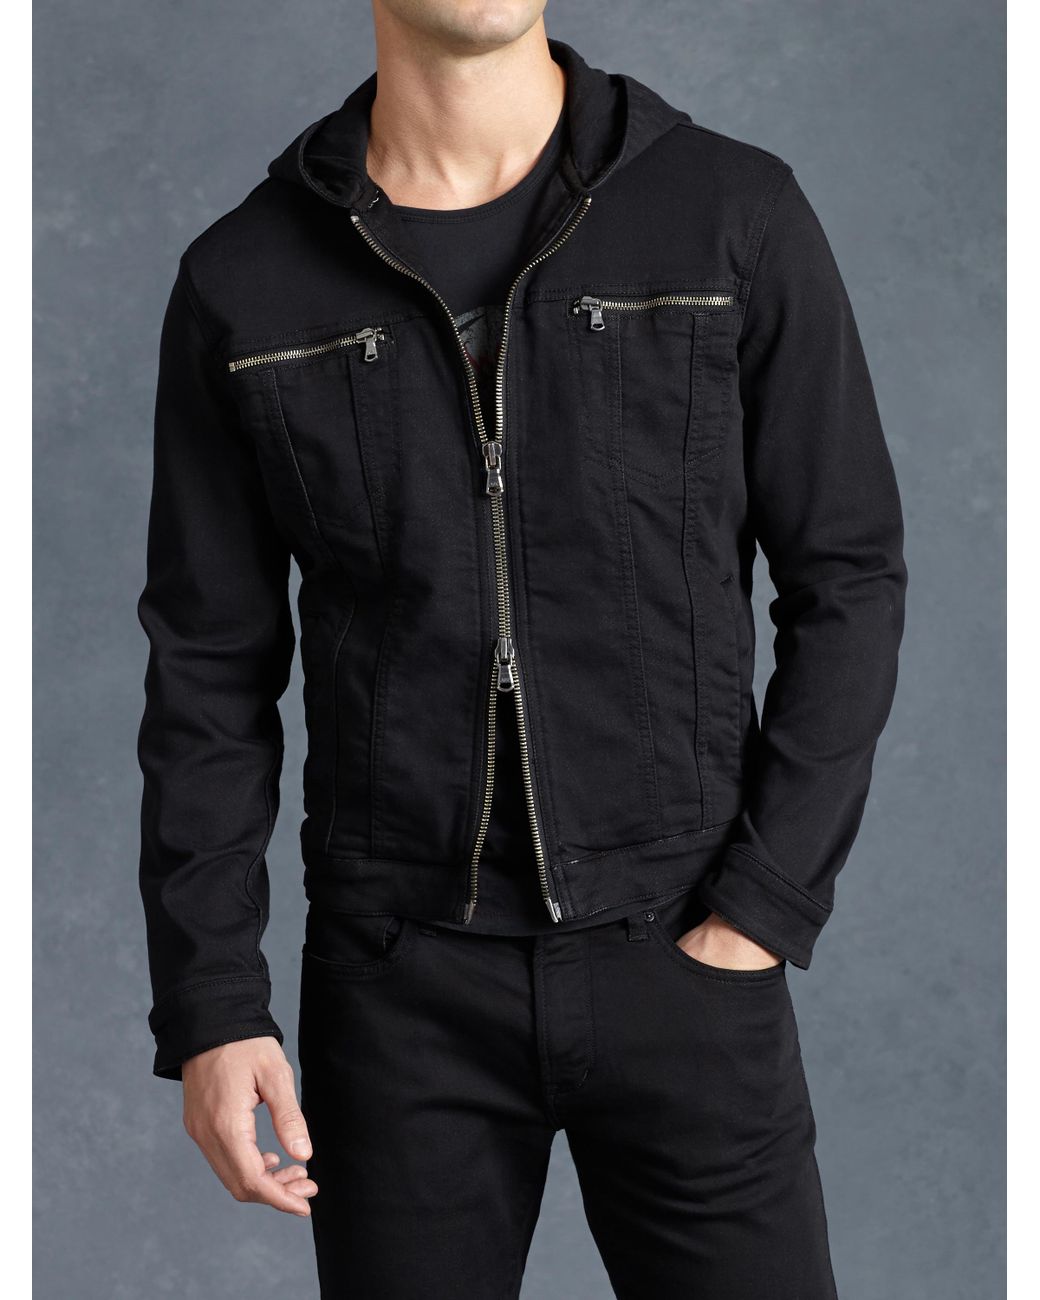 John Varvatos $1298 New John Varvatos Collection Kemper Coat Jacket |  Grailed